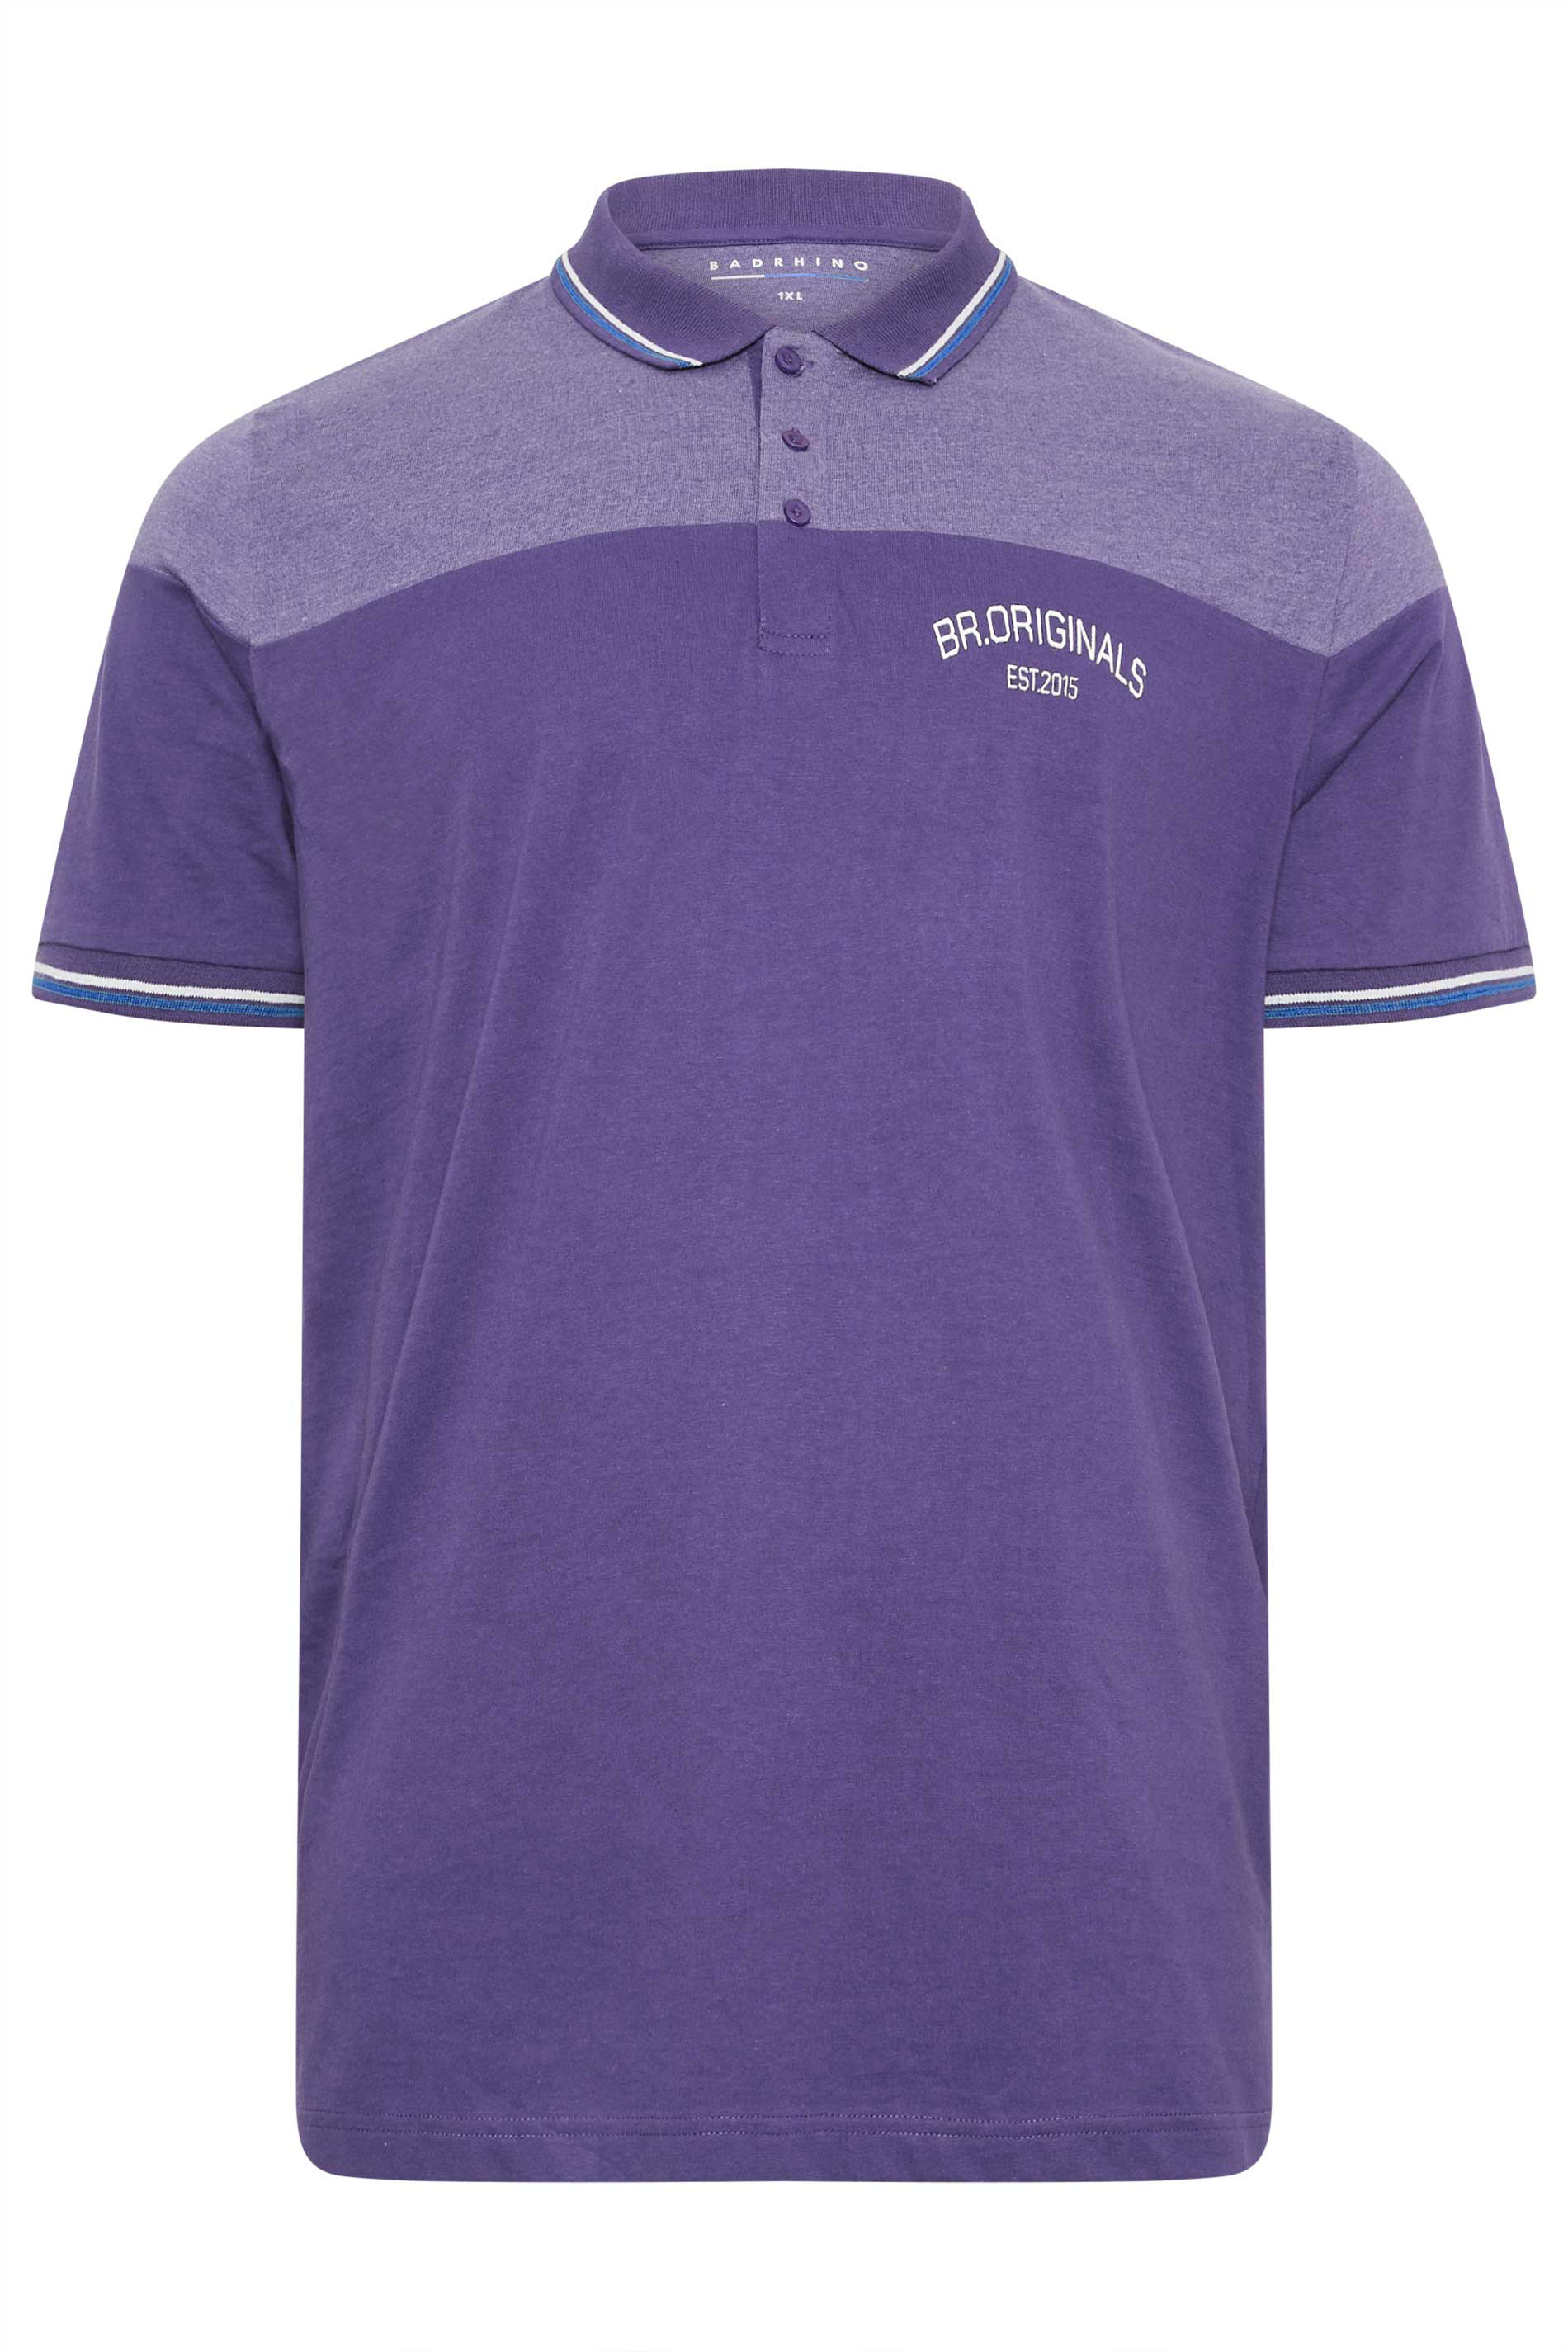 BadRhino Purple 'Originals' Cut & Sew Polo Shirt | BadRhino 2